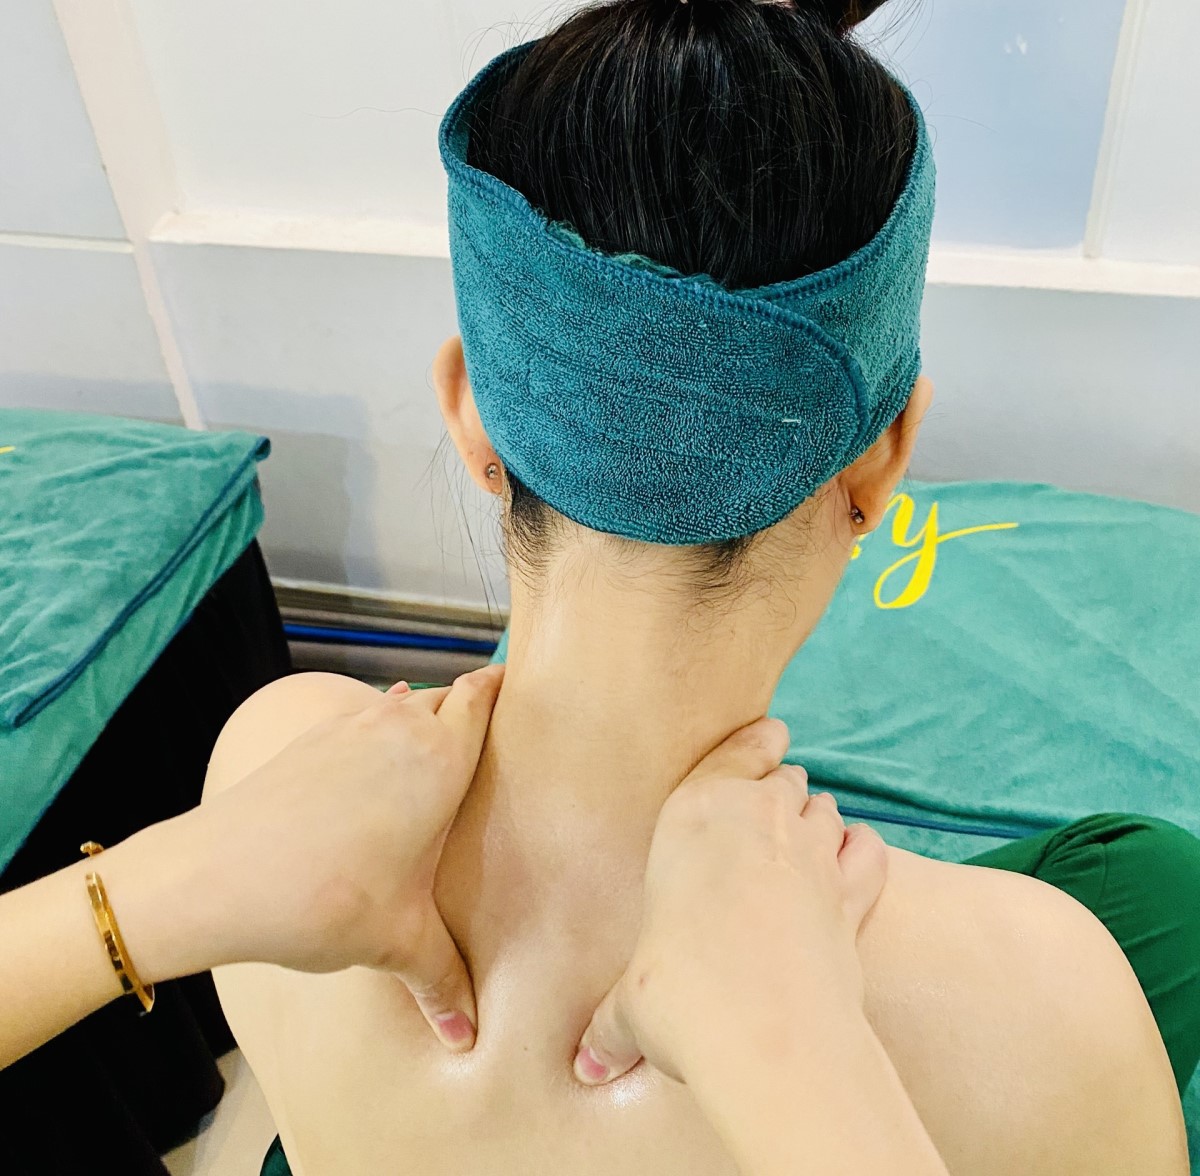 Massage dọc theo chiểu cổ giúp cơ vùng cổ được thư giãn và lưu thông máu tốt hơn